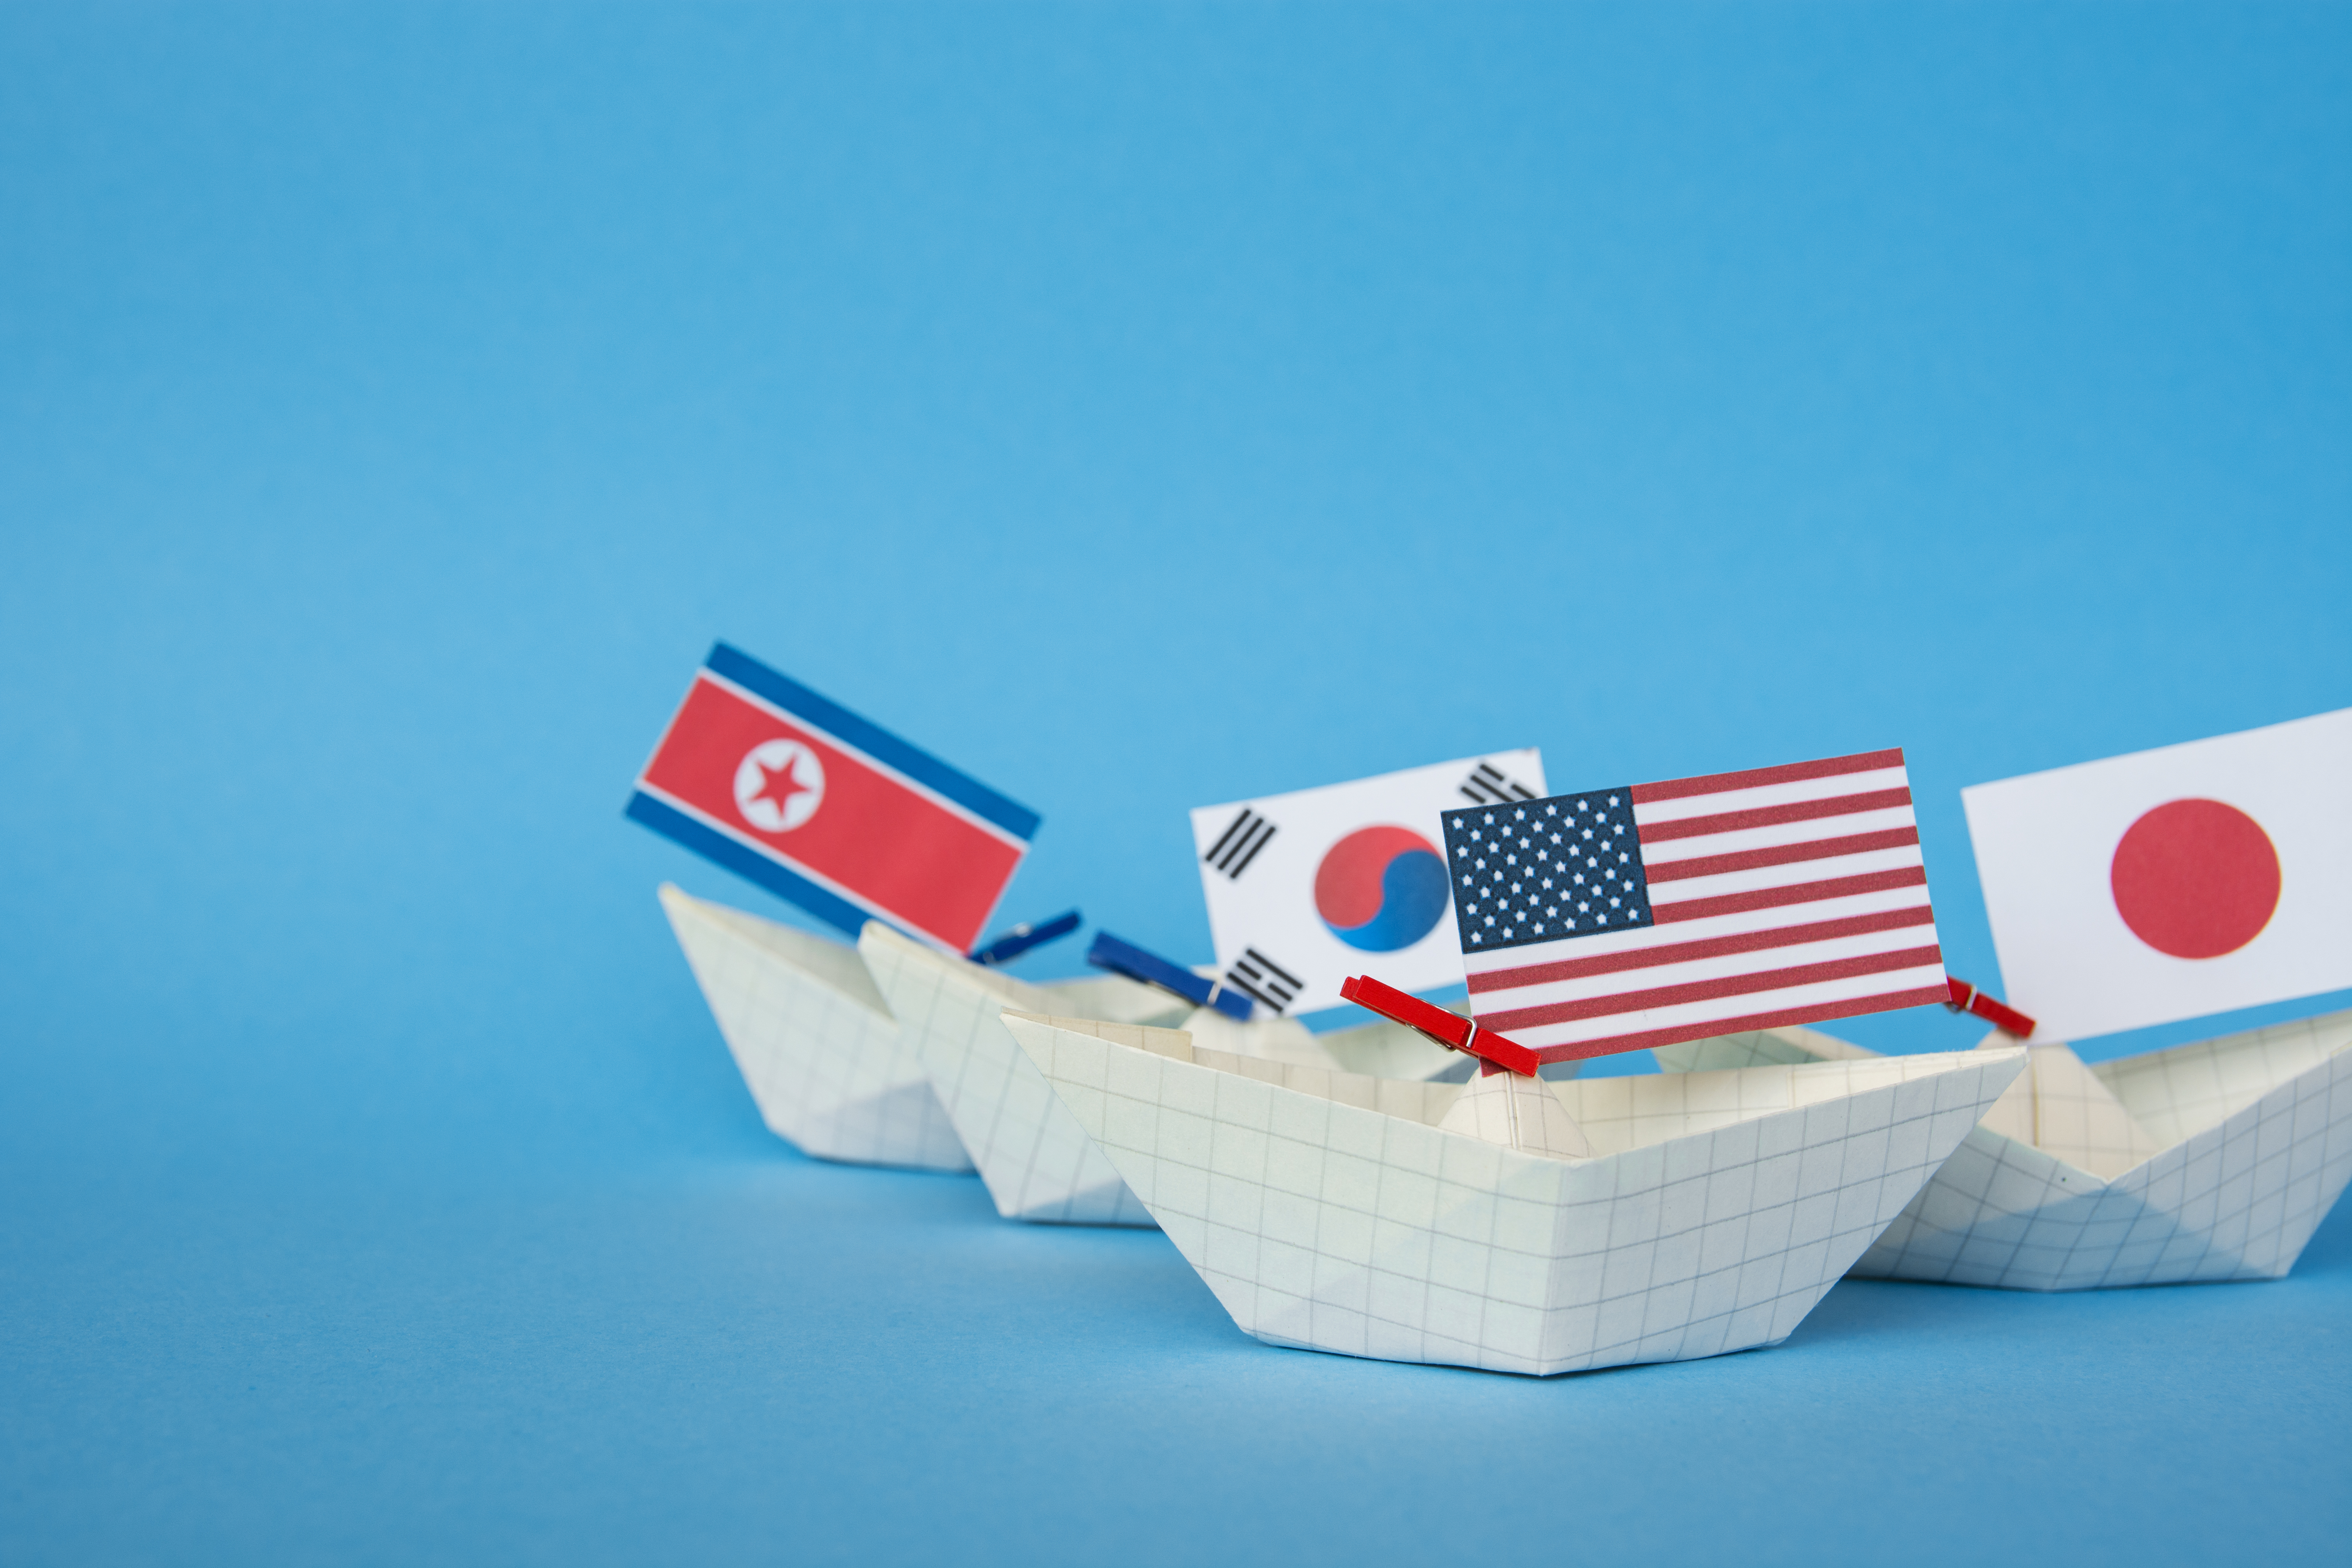 [Global NK 인터뷰] 북중러 연대에 대응하는 한미일 협력 방향